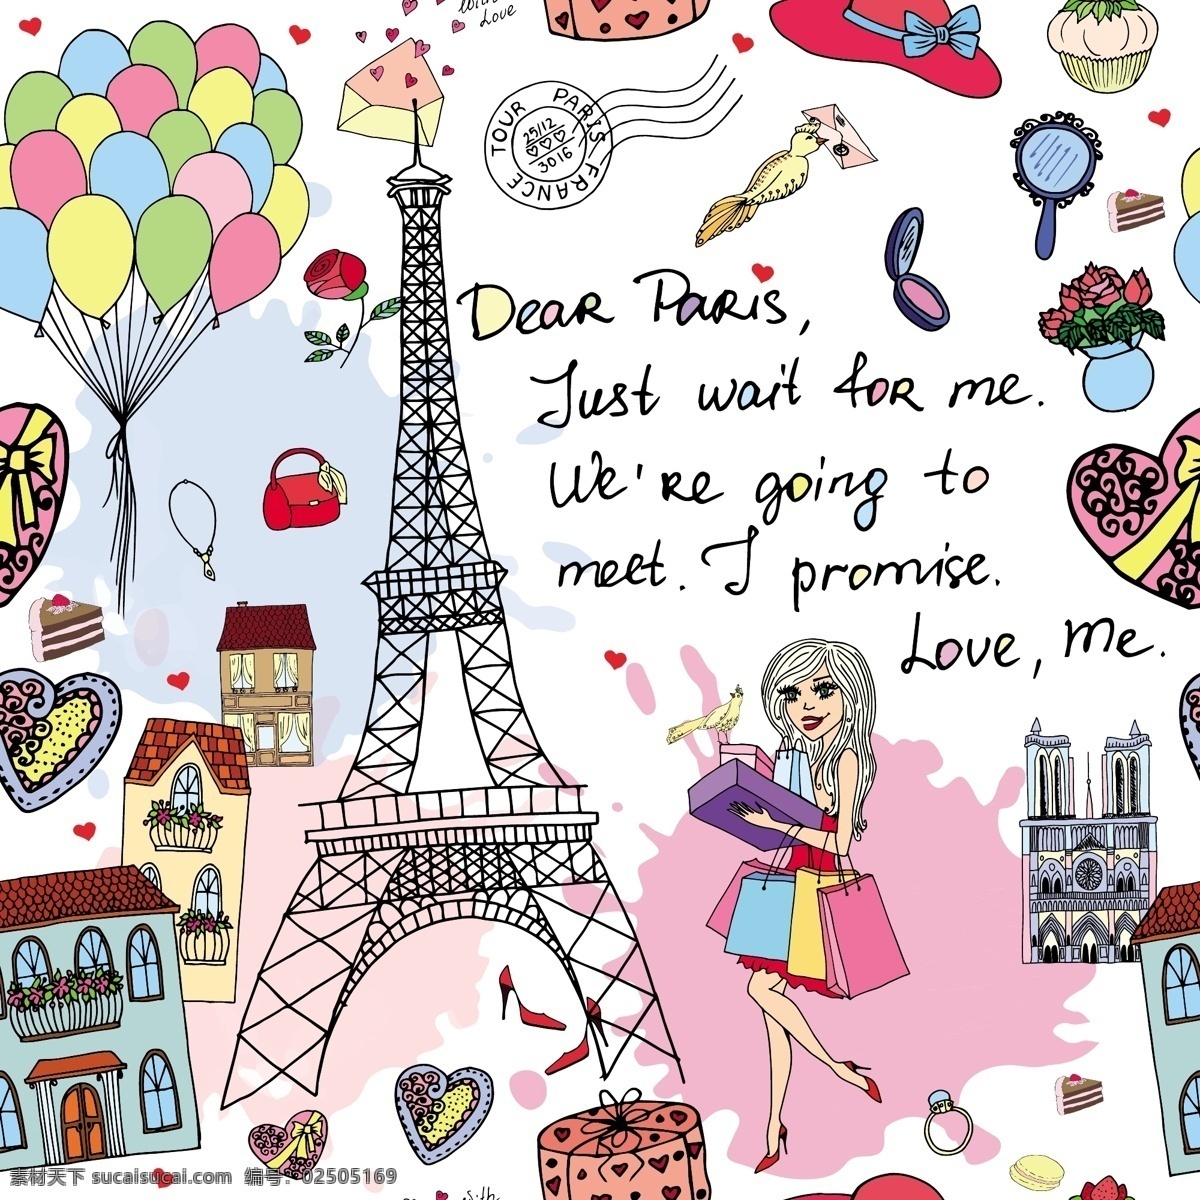 手绘 缤纷 巴黎 旅游 背景 矢量 巴黎铁塔 平面素材 气球 设计素材 食物 矢量素材 鲜花